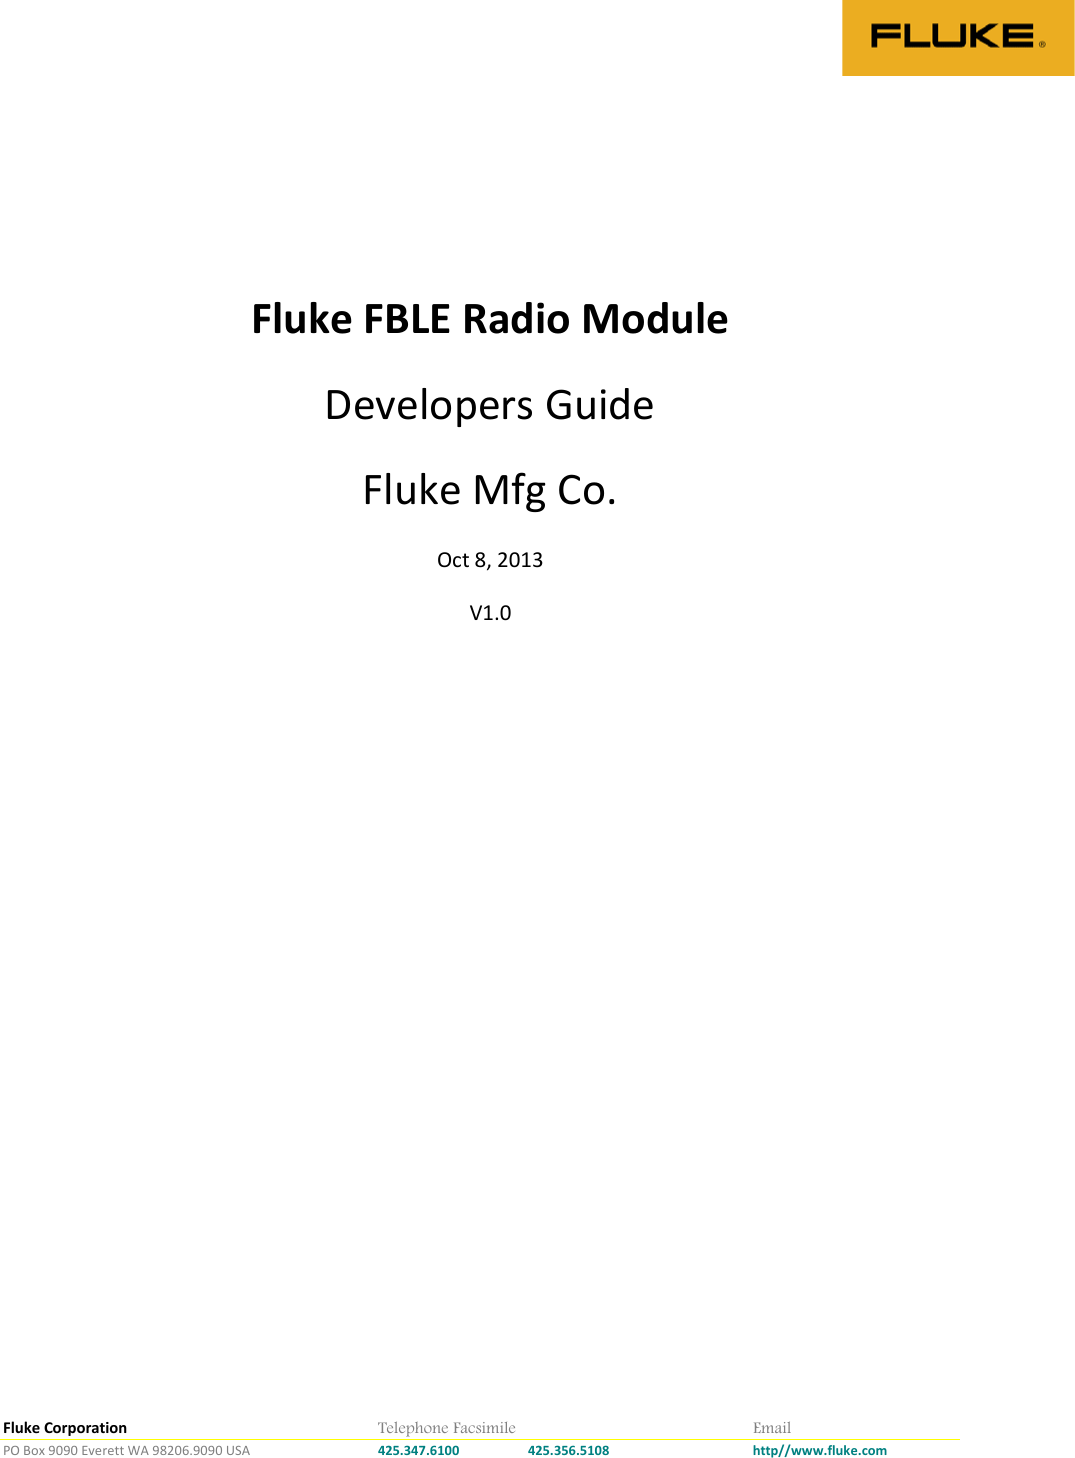 Fluke Corporation        Telephone Facsimile        Email PO Box 9090 Everett WA 98206.9090 USA    425.347.6100 425.356.5108    http//www.fluke.com    Fluke FBLE Radio Module  Developers Guide Fluke Mfg Co. Oct 8, 2013 V1.0    